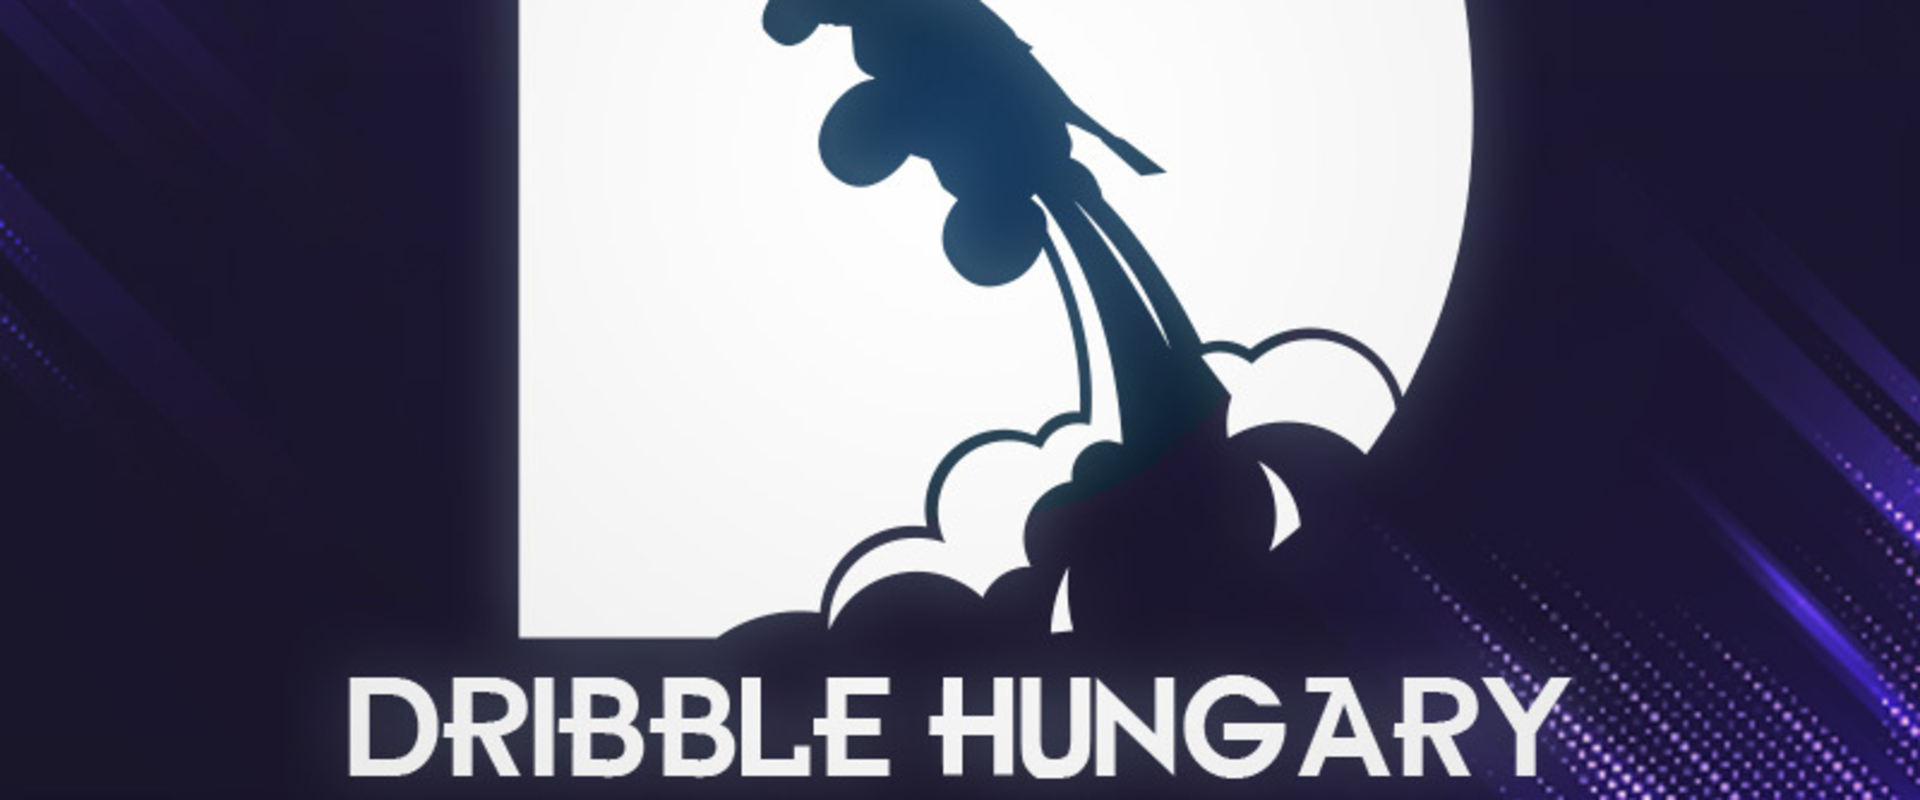 Új ligával és új selejtezővel indul el a Dribble Hungary 6. szezonja